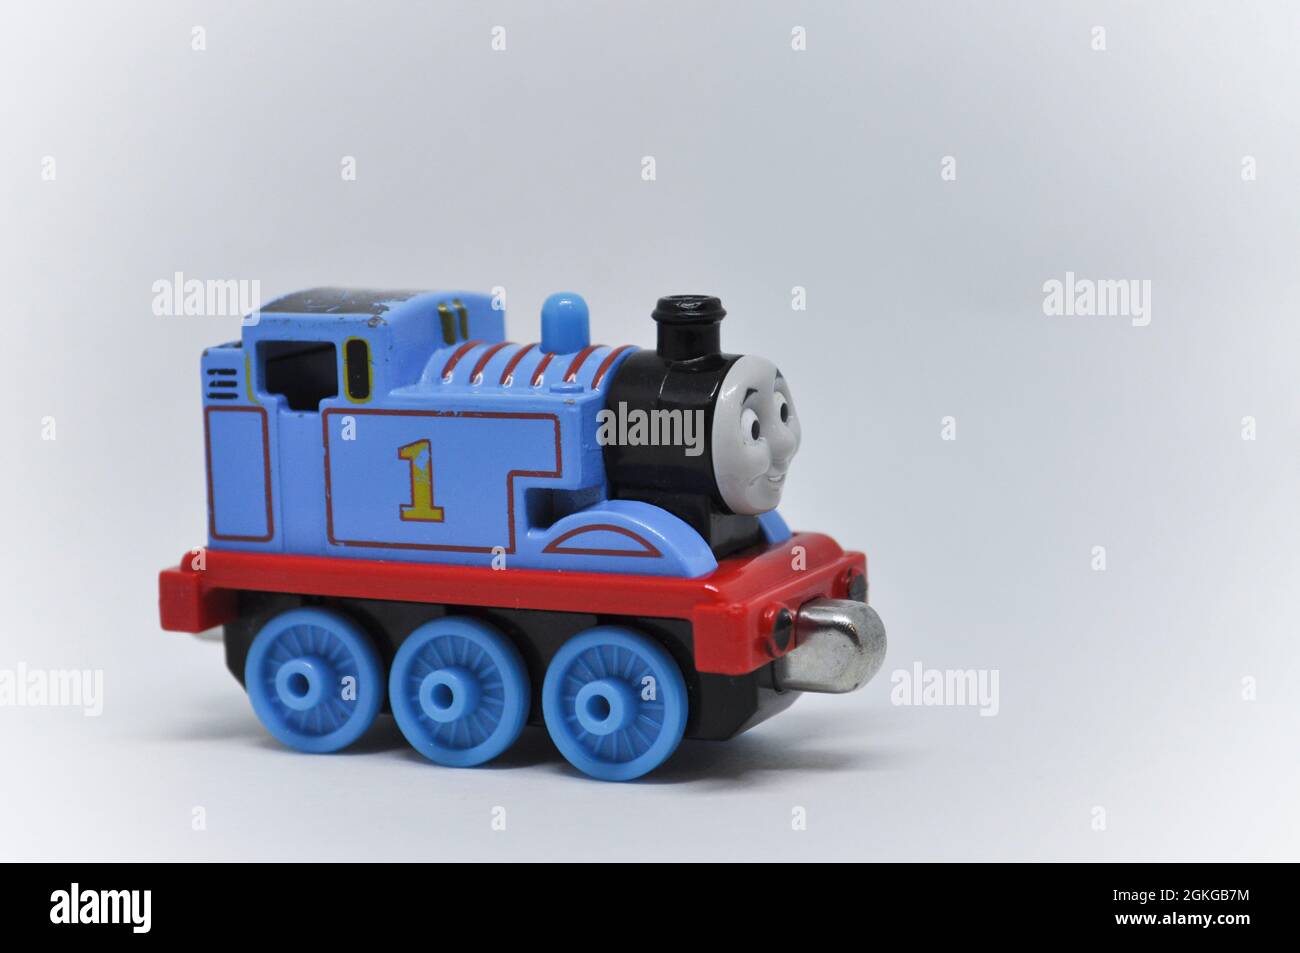 El modelo presofundido de Thomas el motor del tanque se fija sobre un fondo blanco. Hay espacio de copia disponible Foto de stock